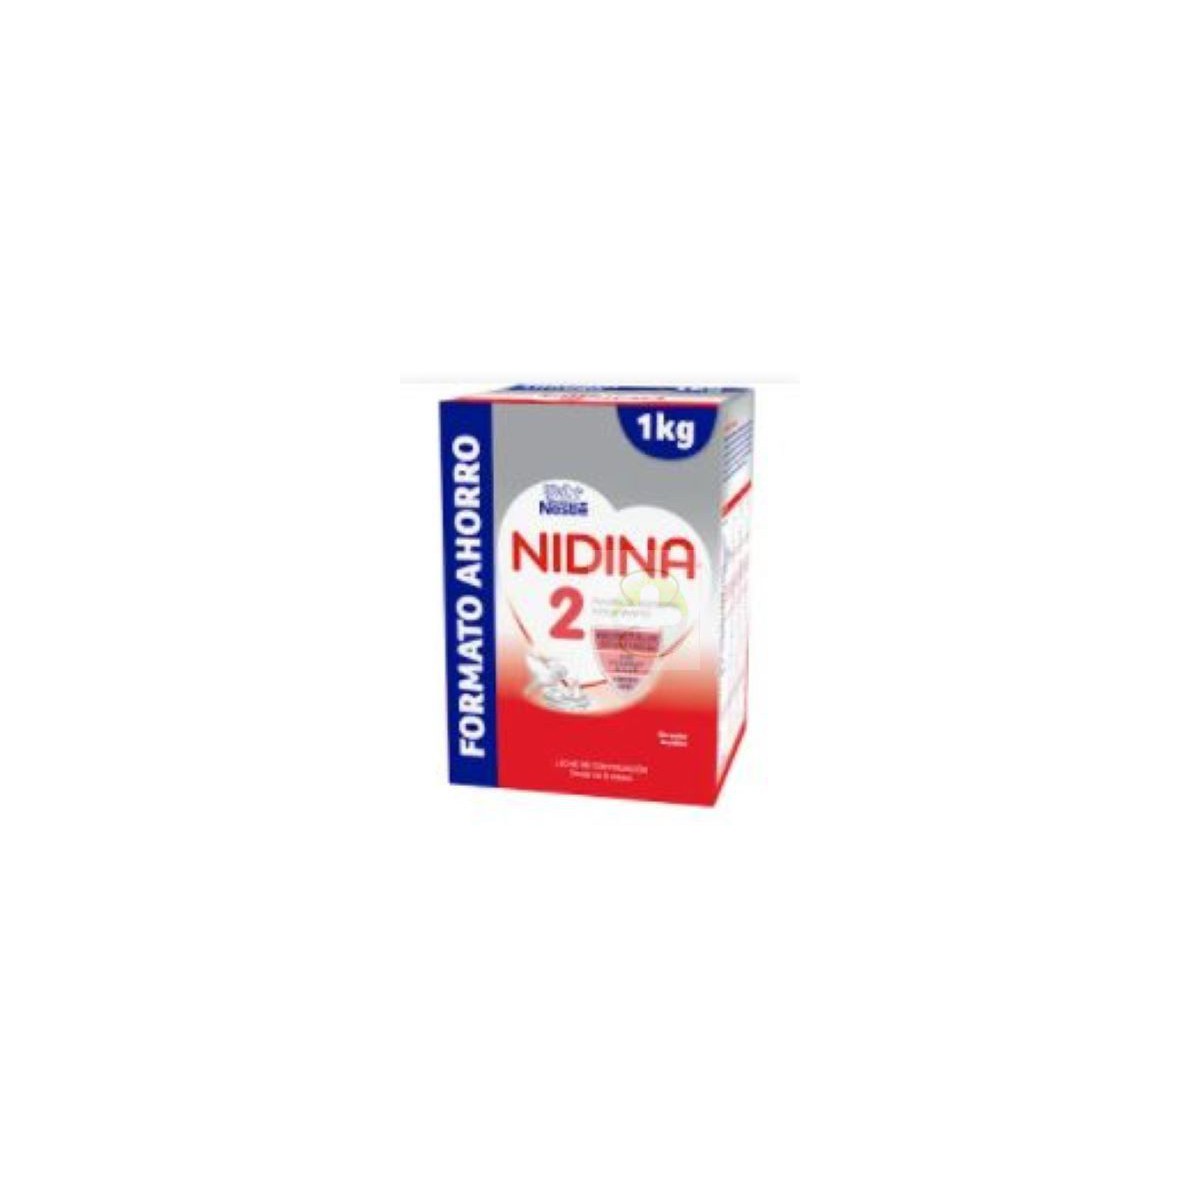 Comprar Nestlé Nidina 2 Premium 1Kg